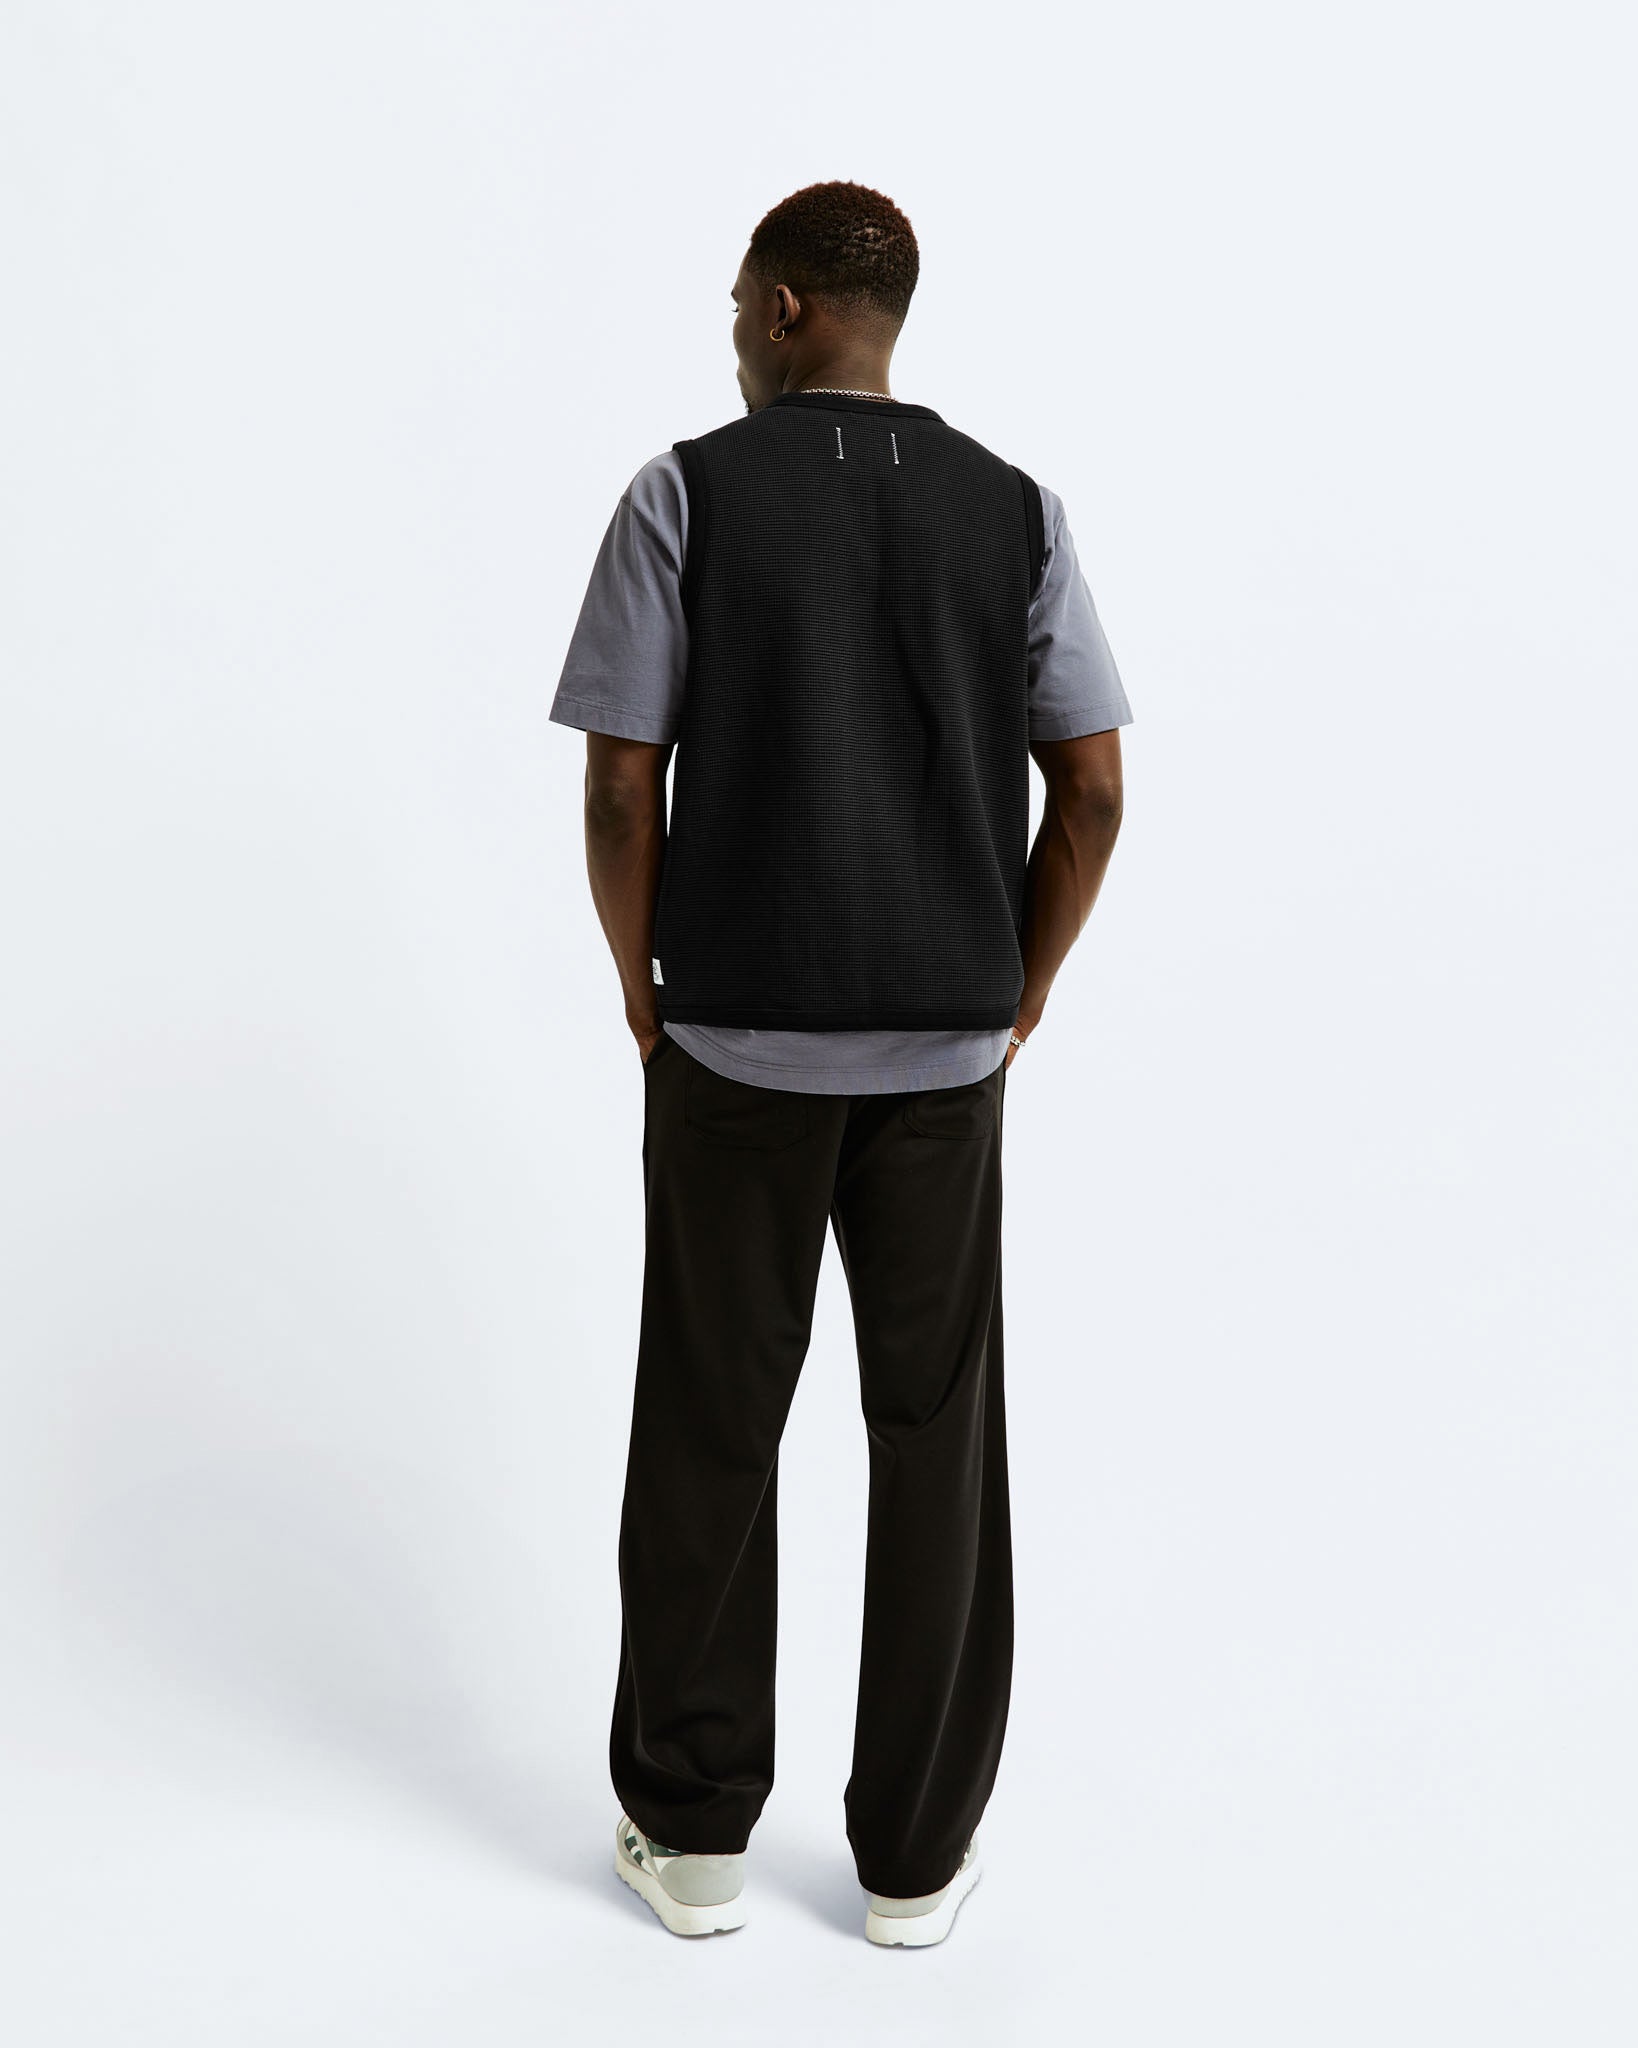 Flatback Thermal Zip Vest